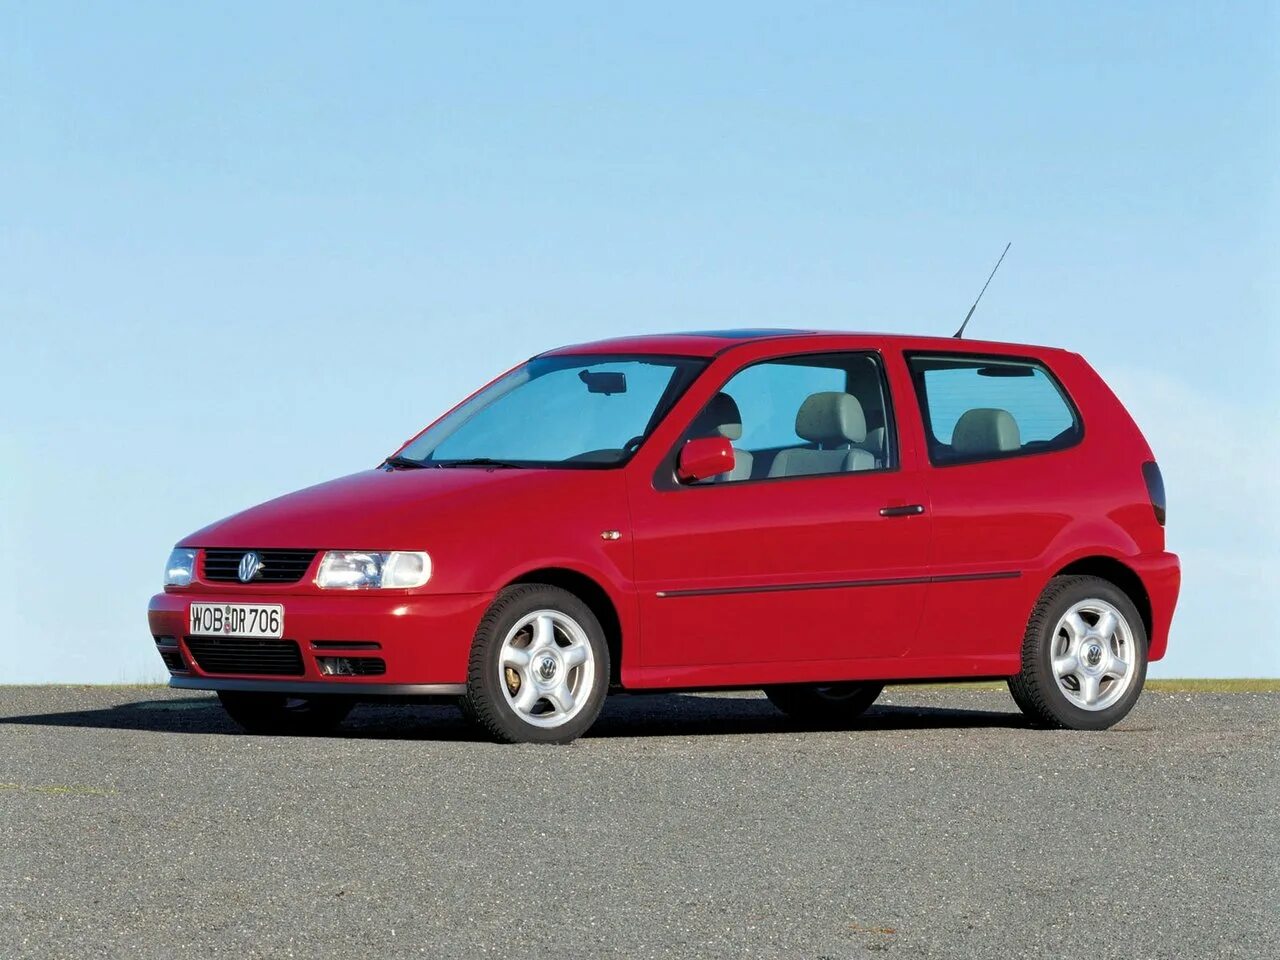 Volkswagen Polo, III, 1994 — 2002. Volkswagen Polo III. Volkswagen Polo 3 хэтчбек. Volkswagen Polo, III, 1994 — 2002, хетчбэк, 3 дв.. Фольксваген поло 3 хэтчбек